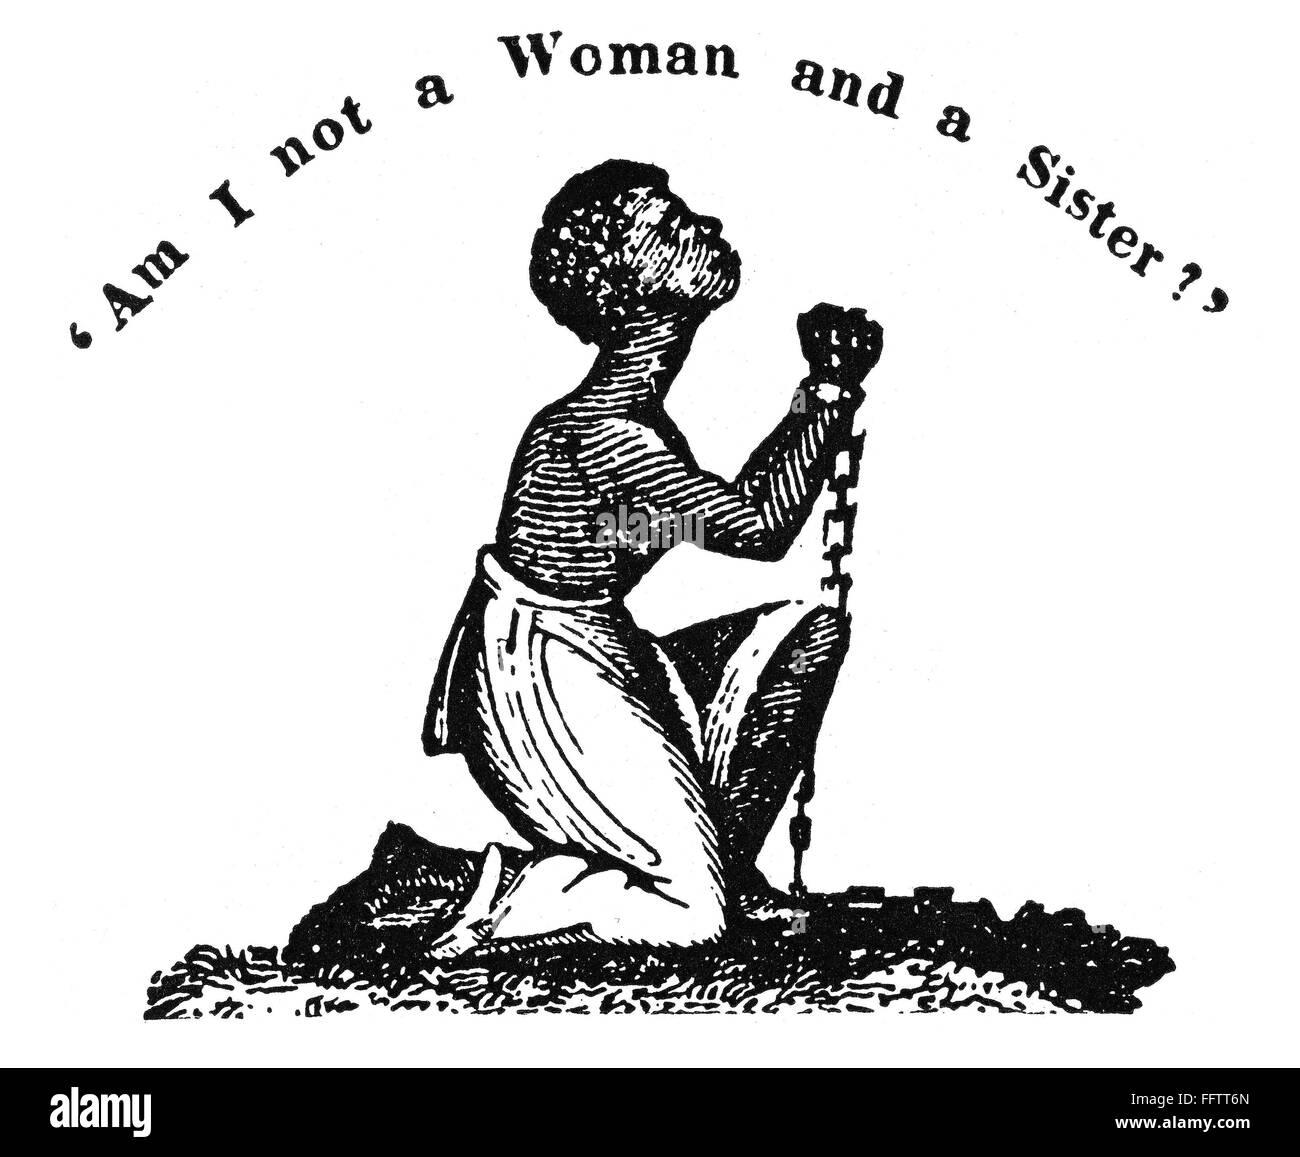 La esclavitud: Mujer, 1832. /N'No soy una mujer y una hermana?' americanas typefounder's cut de William Lloyd Garrison abolicionista del periódico "El Libertador", 1832. Foto de stock